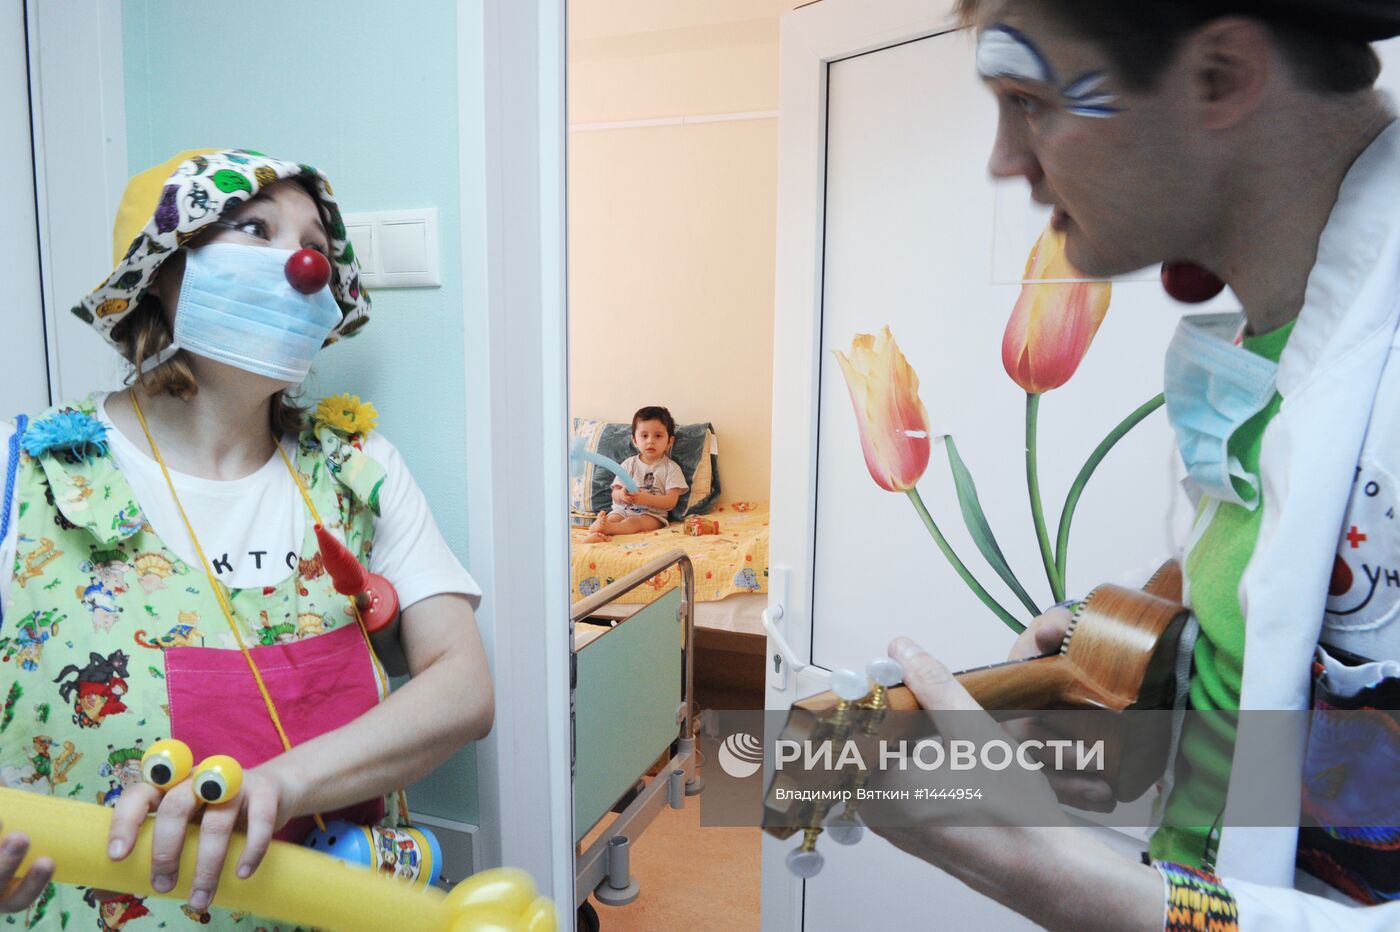 Артисты учреждения "Доктор клоун" в детской клинической больнице